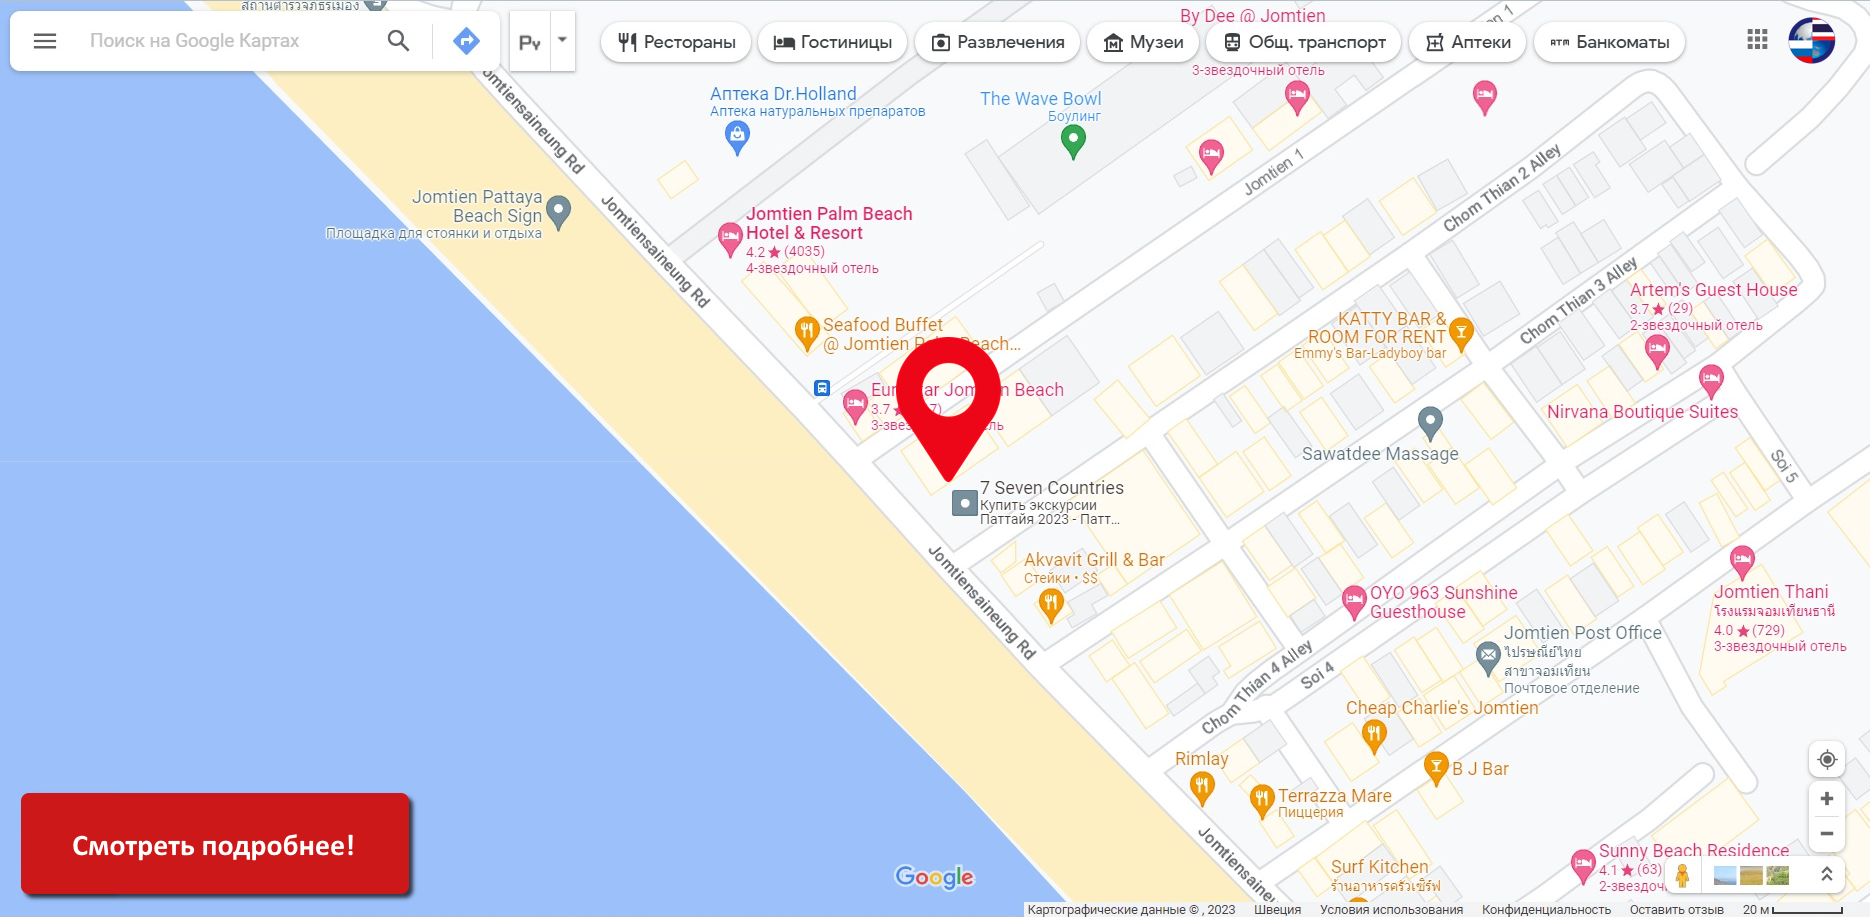 Офис Thai Online Паттайя экскурсии где находится расположен как найти добраться карта схема план